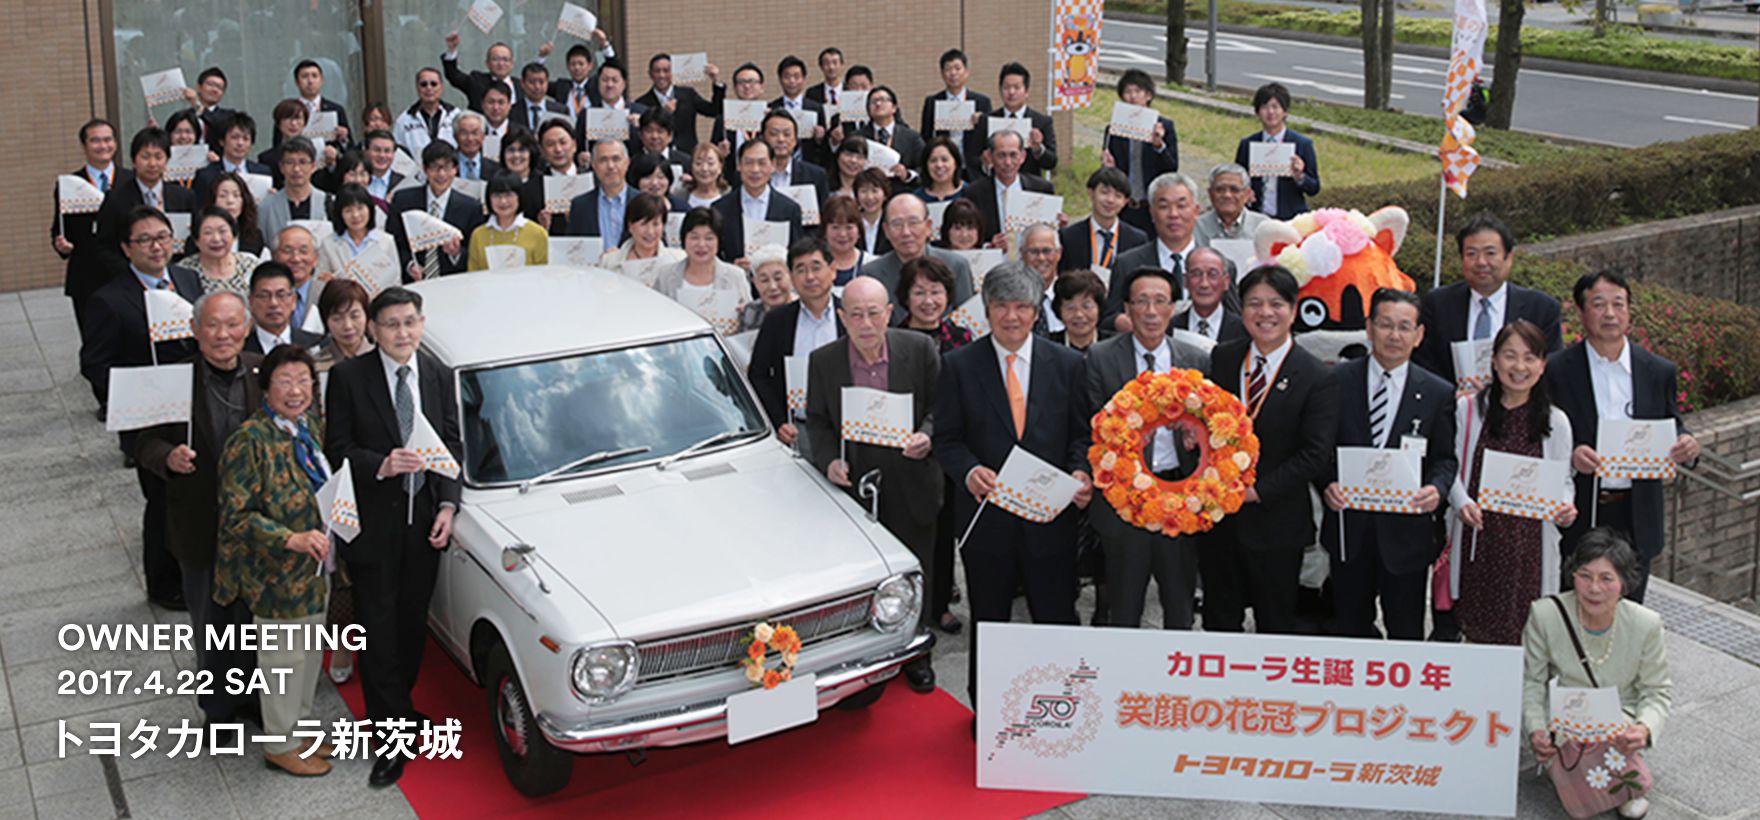 トヨタ インフォメーション キャンペーン カローラ 笑顔の花冠プロジェクト トヨタカローラ新茨城 トヨタ自動車webサイト